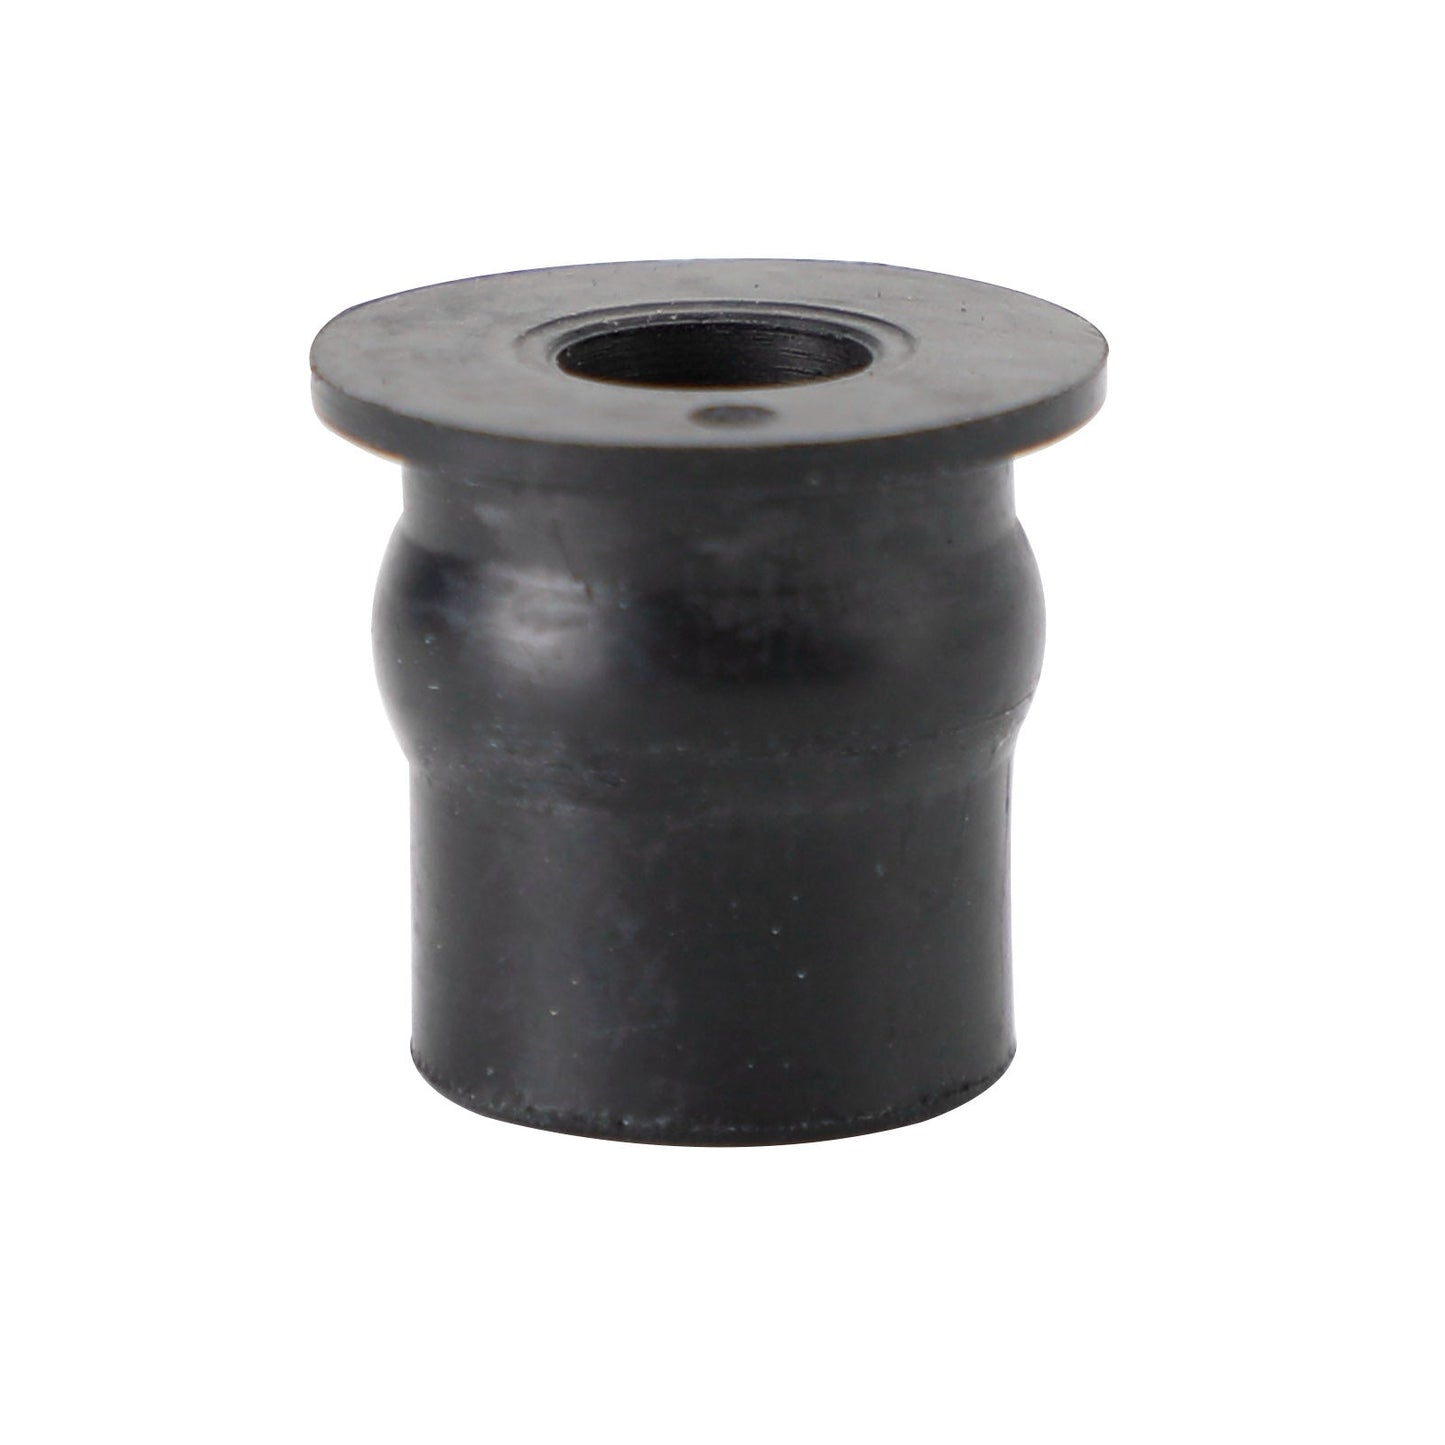 M6-Gummi-Wellnuts Wellnuts für Verkleidungs- und Bildschirmbefestigung, 100 Stück – 13 mm Loch